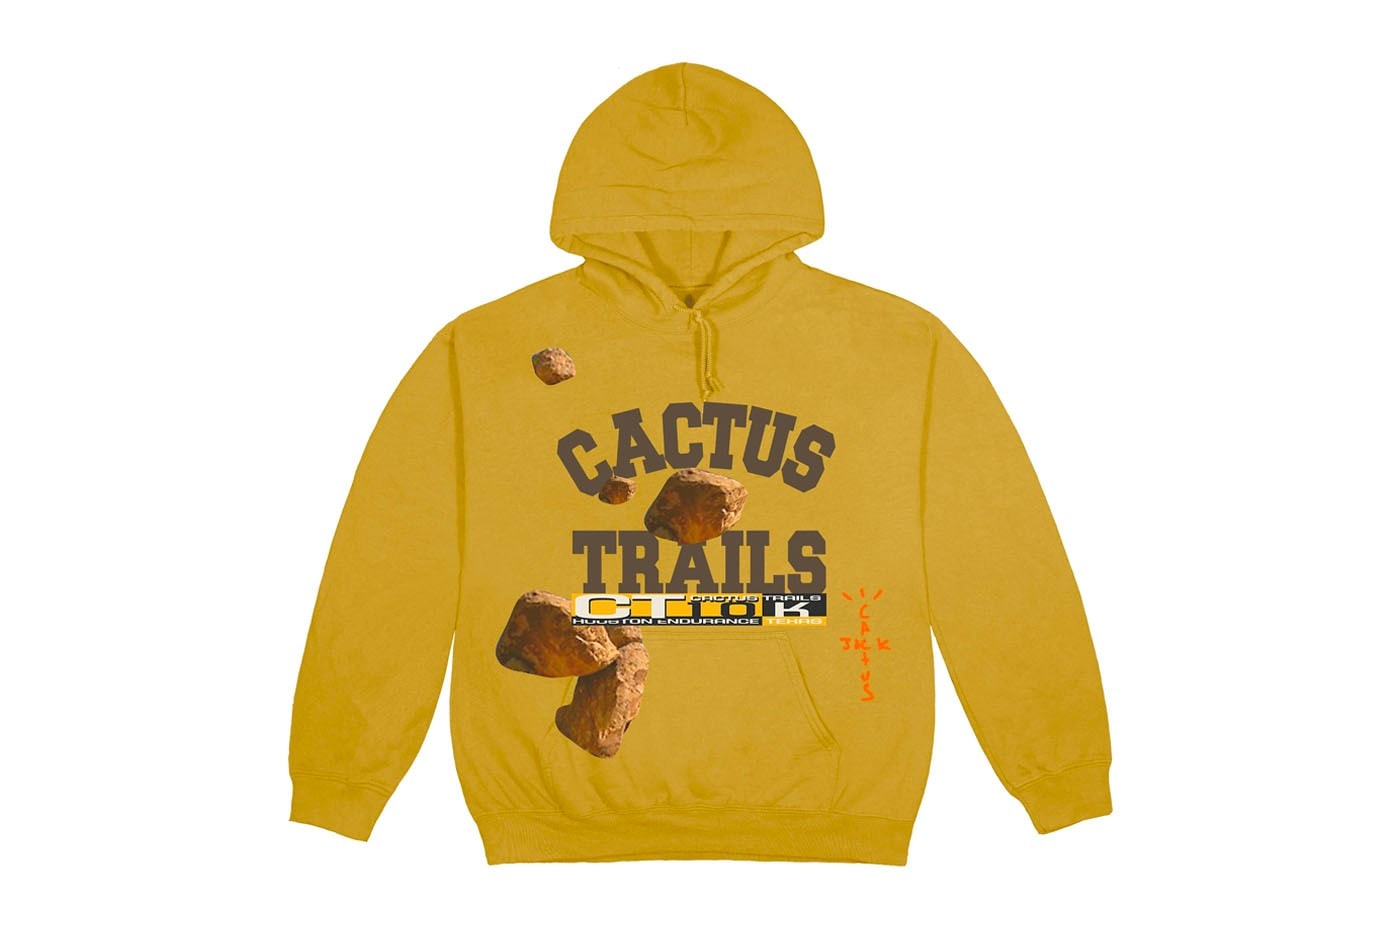 Travis Scott 完整「Cactus Trails」周邊商品發佈